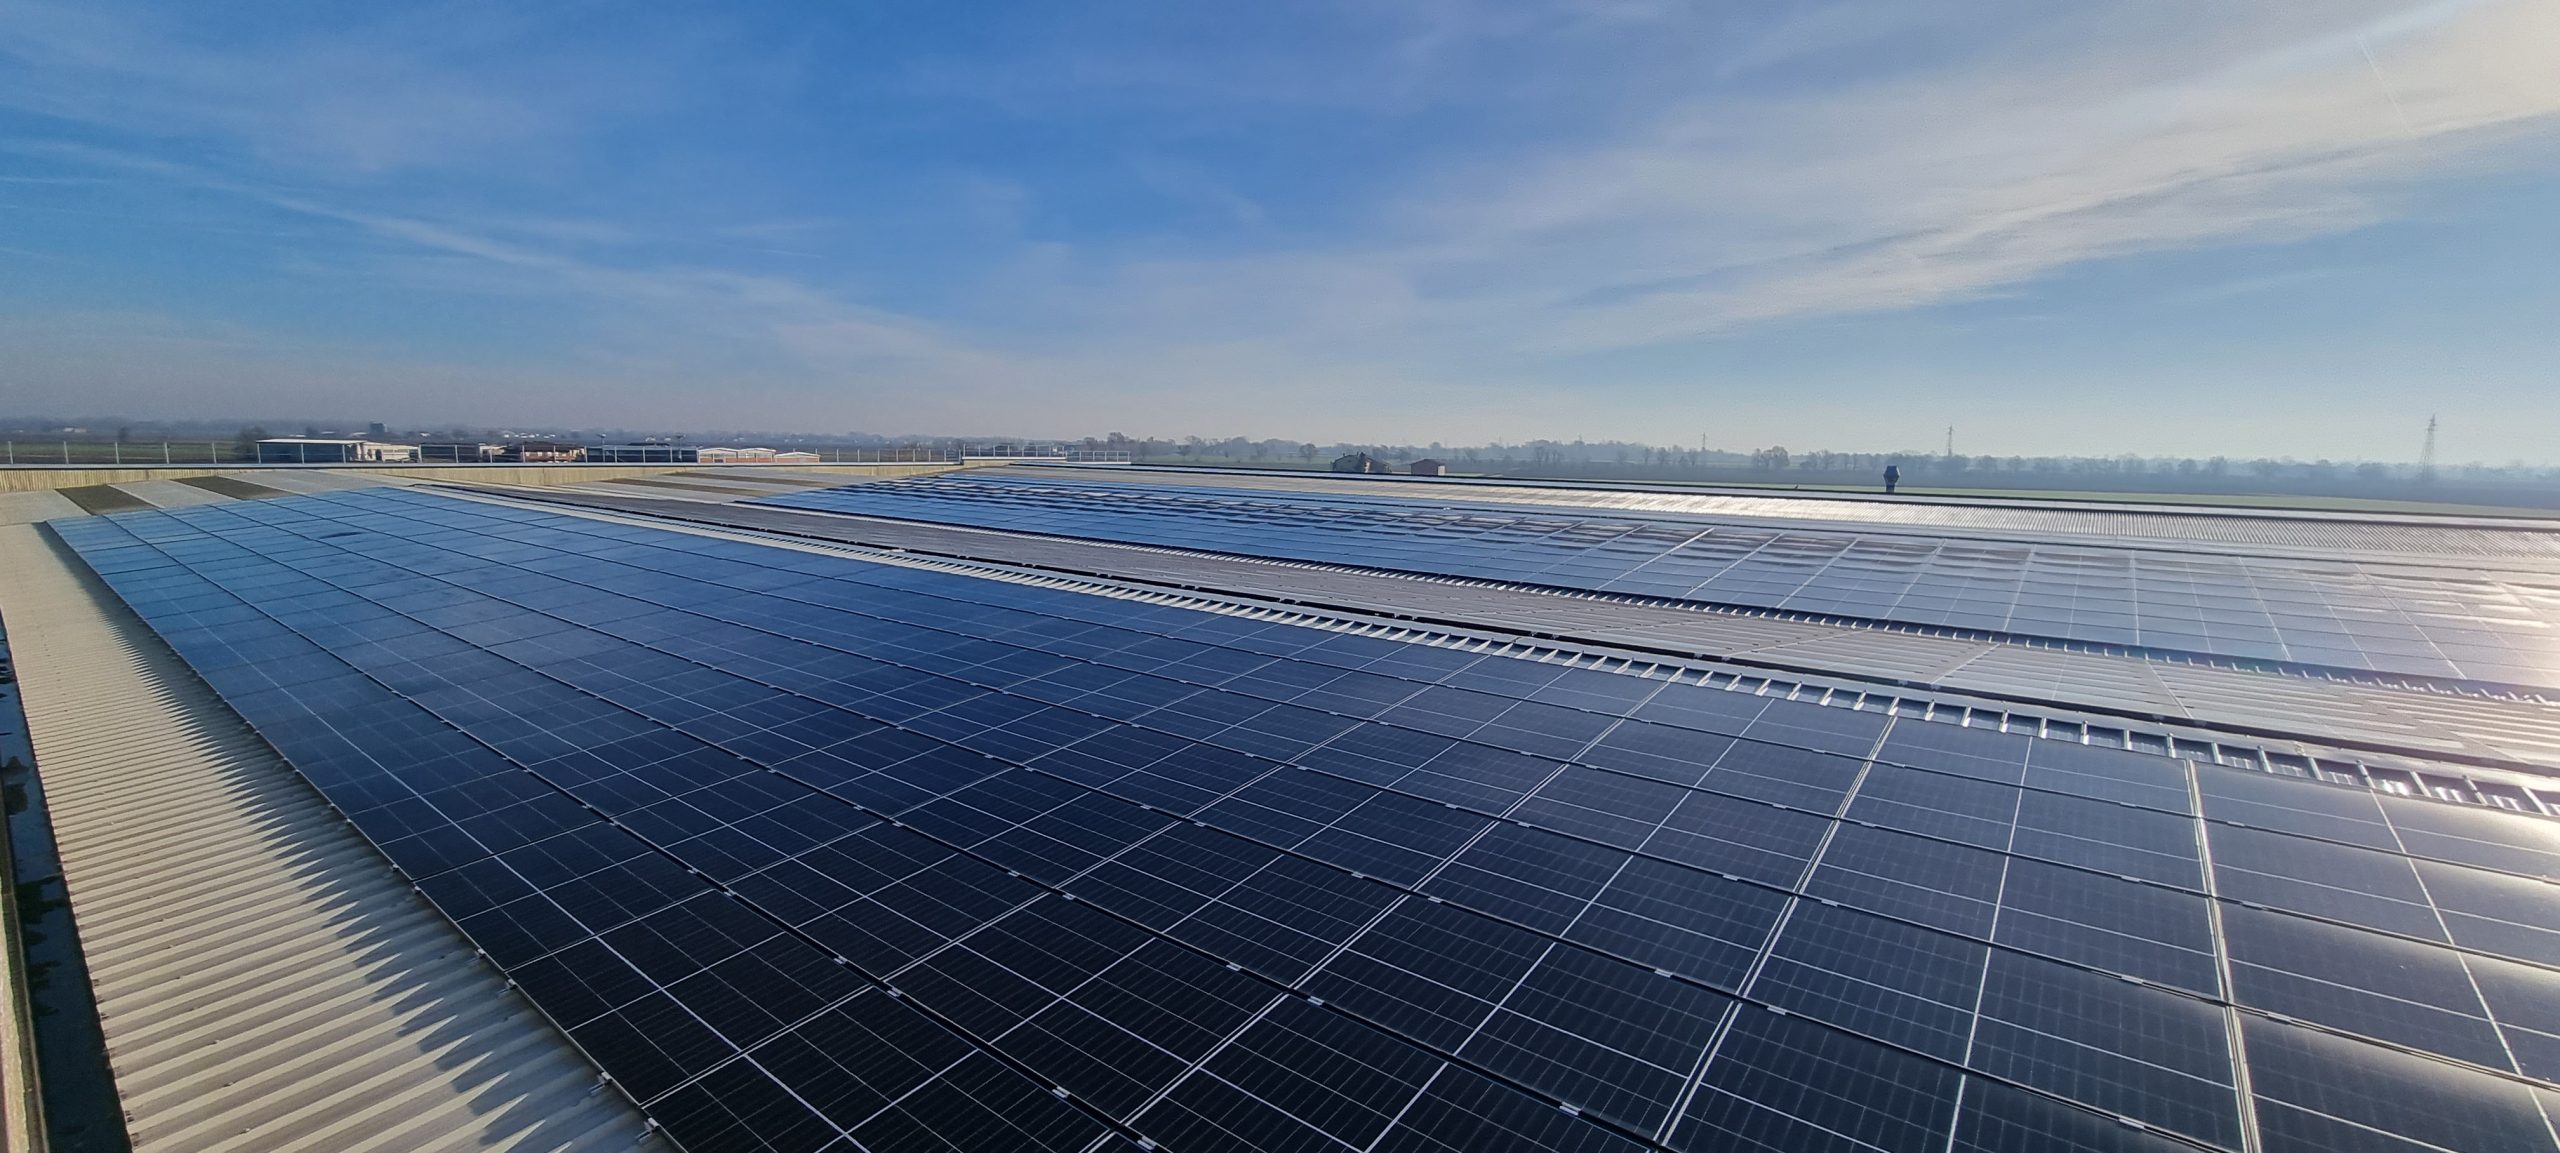 Impianto fotovoltaico su tetto - ICEL srl